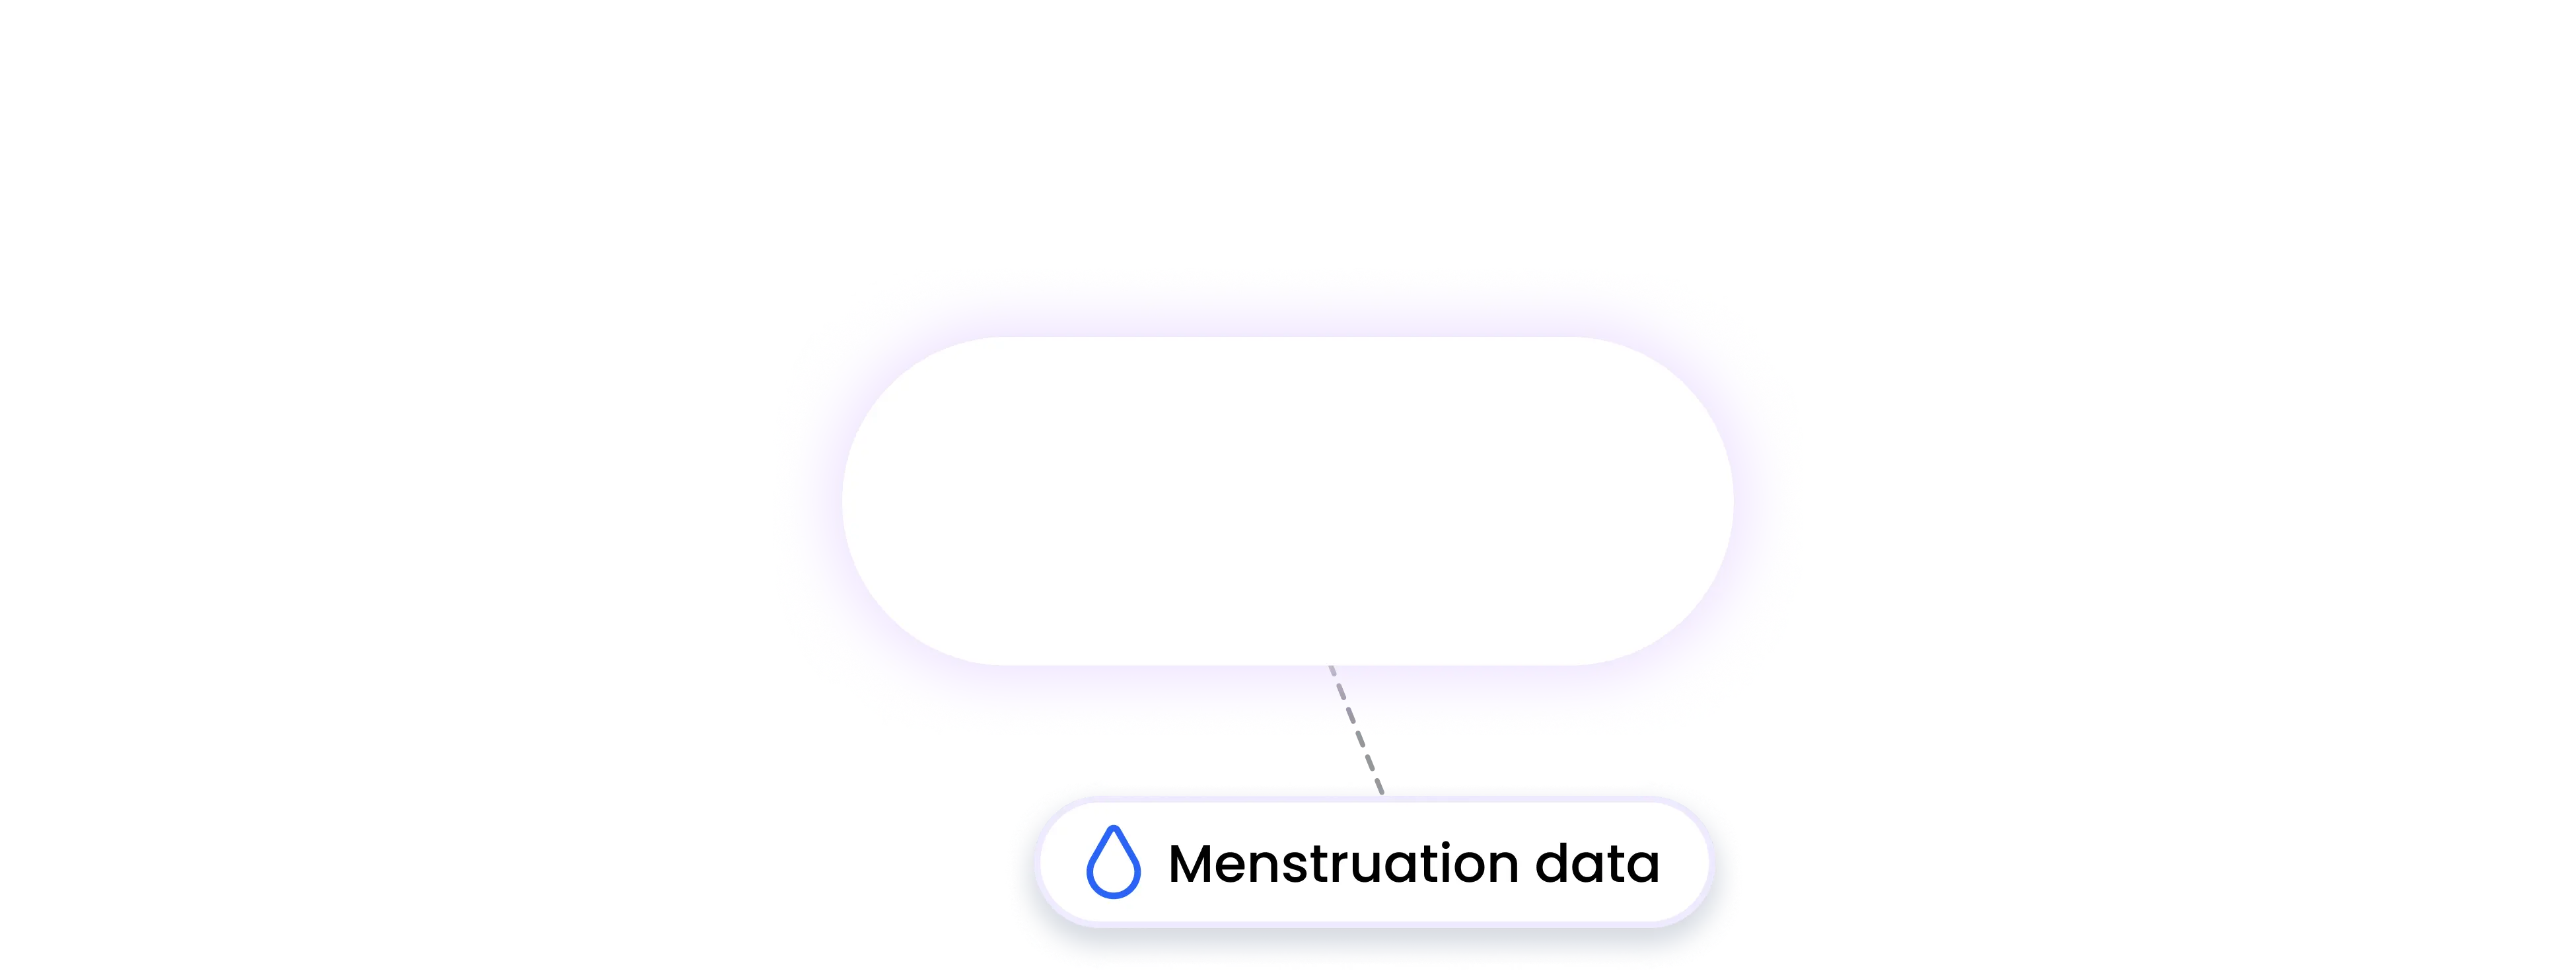 macrosfirst integration MENSTRUATION data